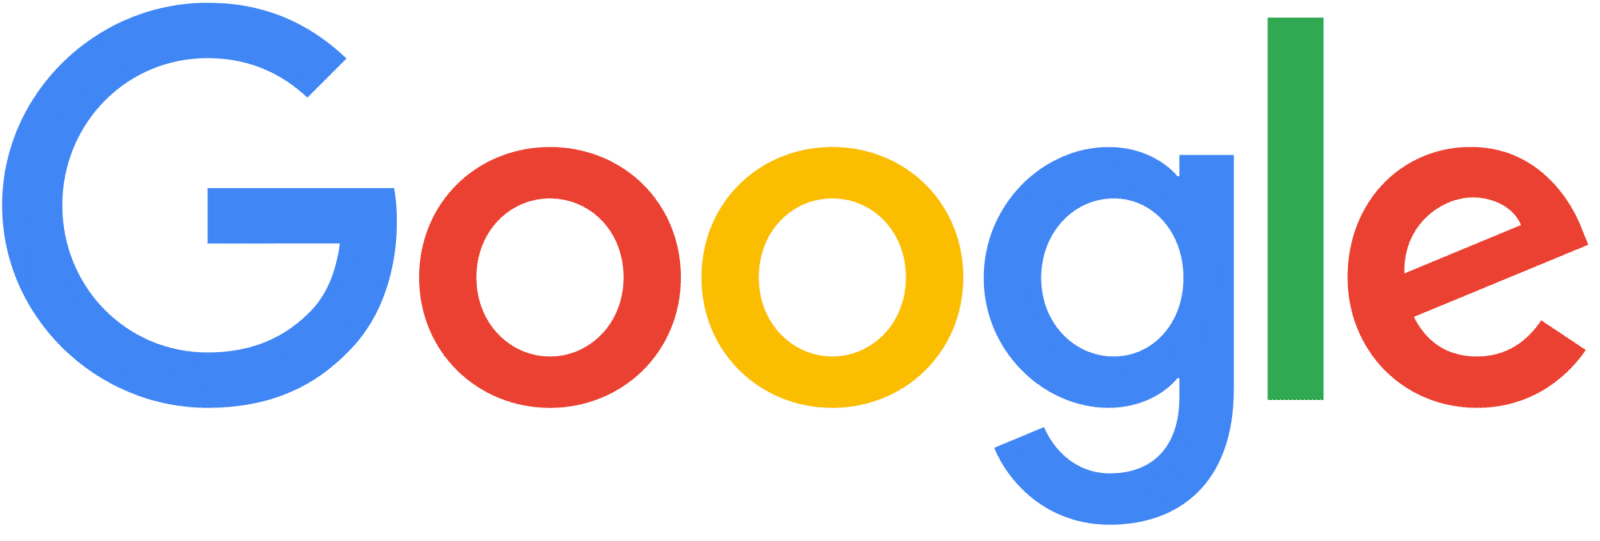 Pixel 3 Google Les Google Pixel 3 et Pixel 3 XL arrivent en France ! 9 octobre